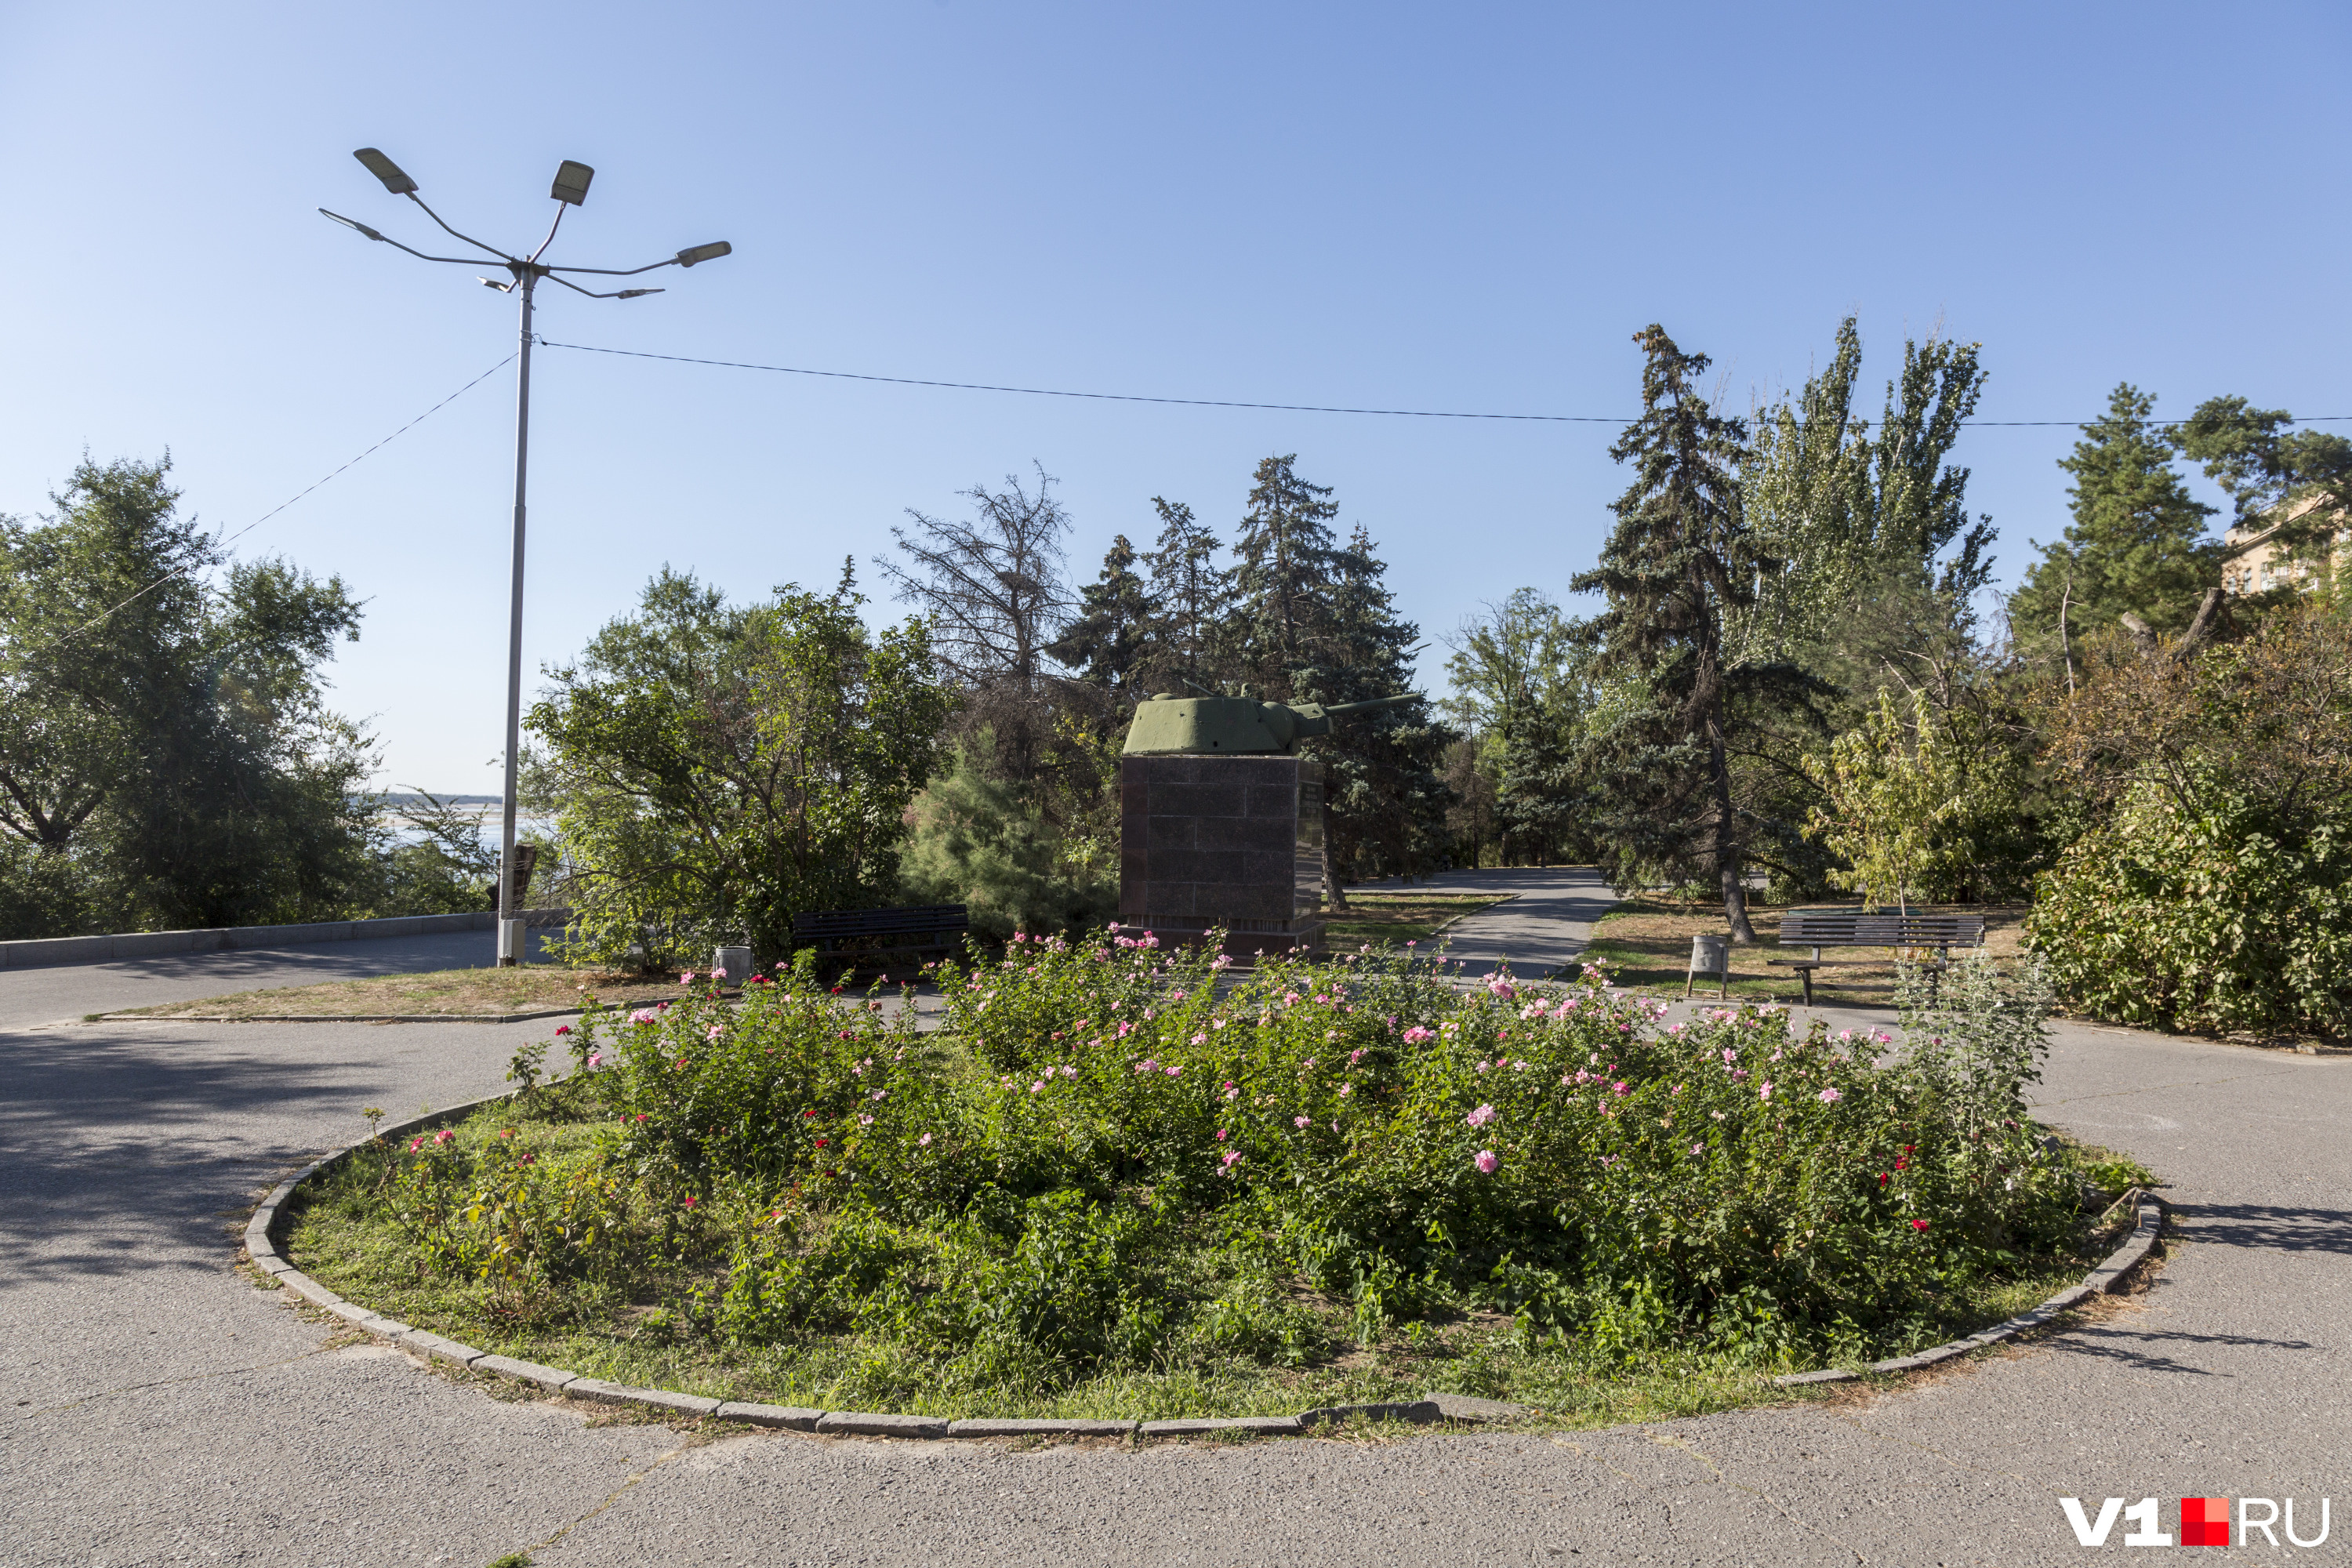 Сорняки вместо ухоженных клумб давно уже иллюстрируют заботу администрации Волгограда о городе